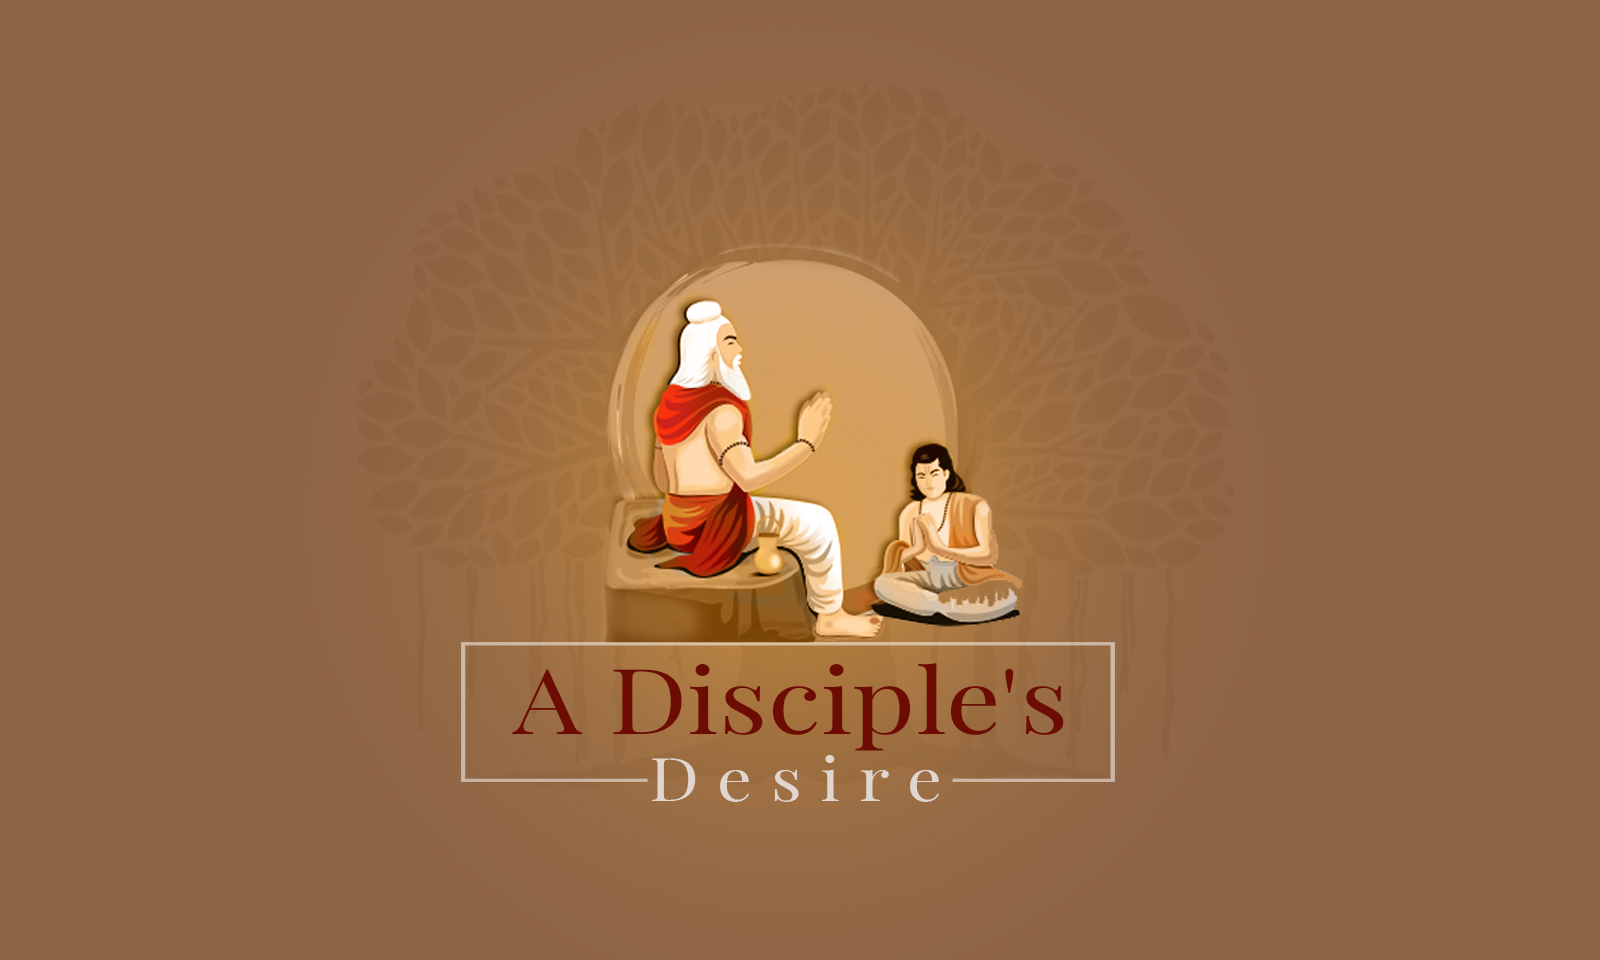 A Disciple's Desire